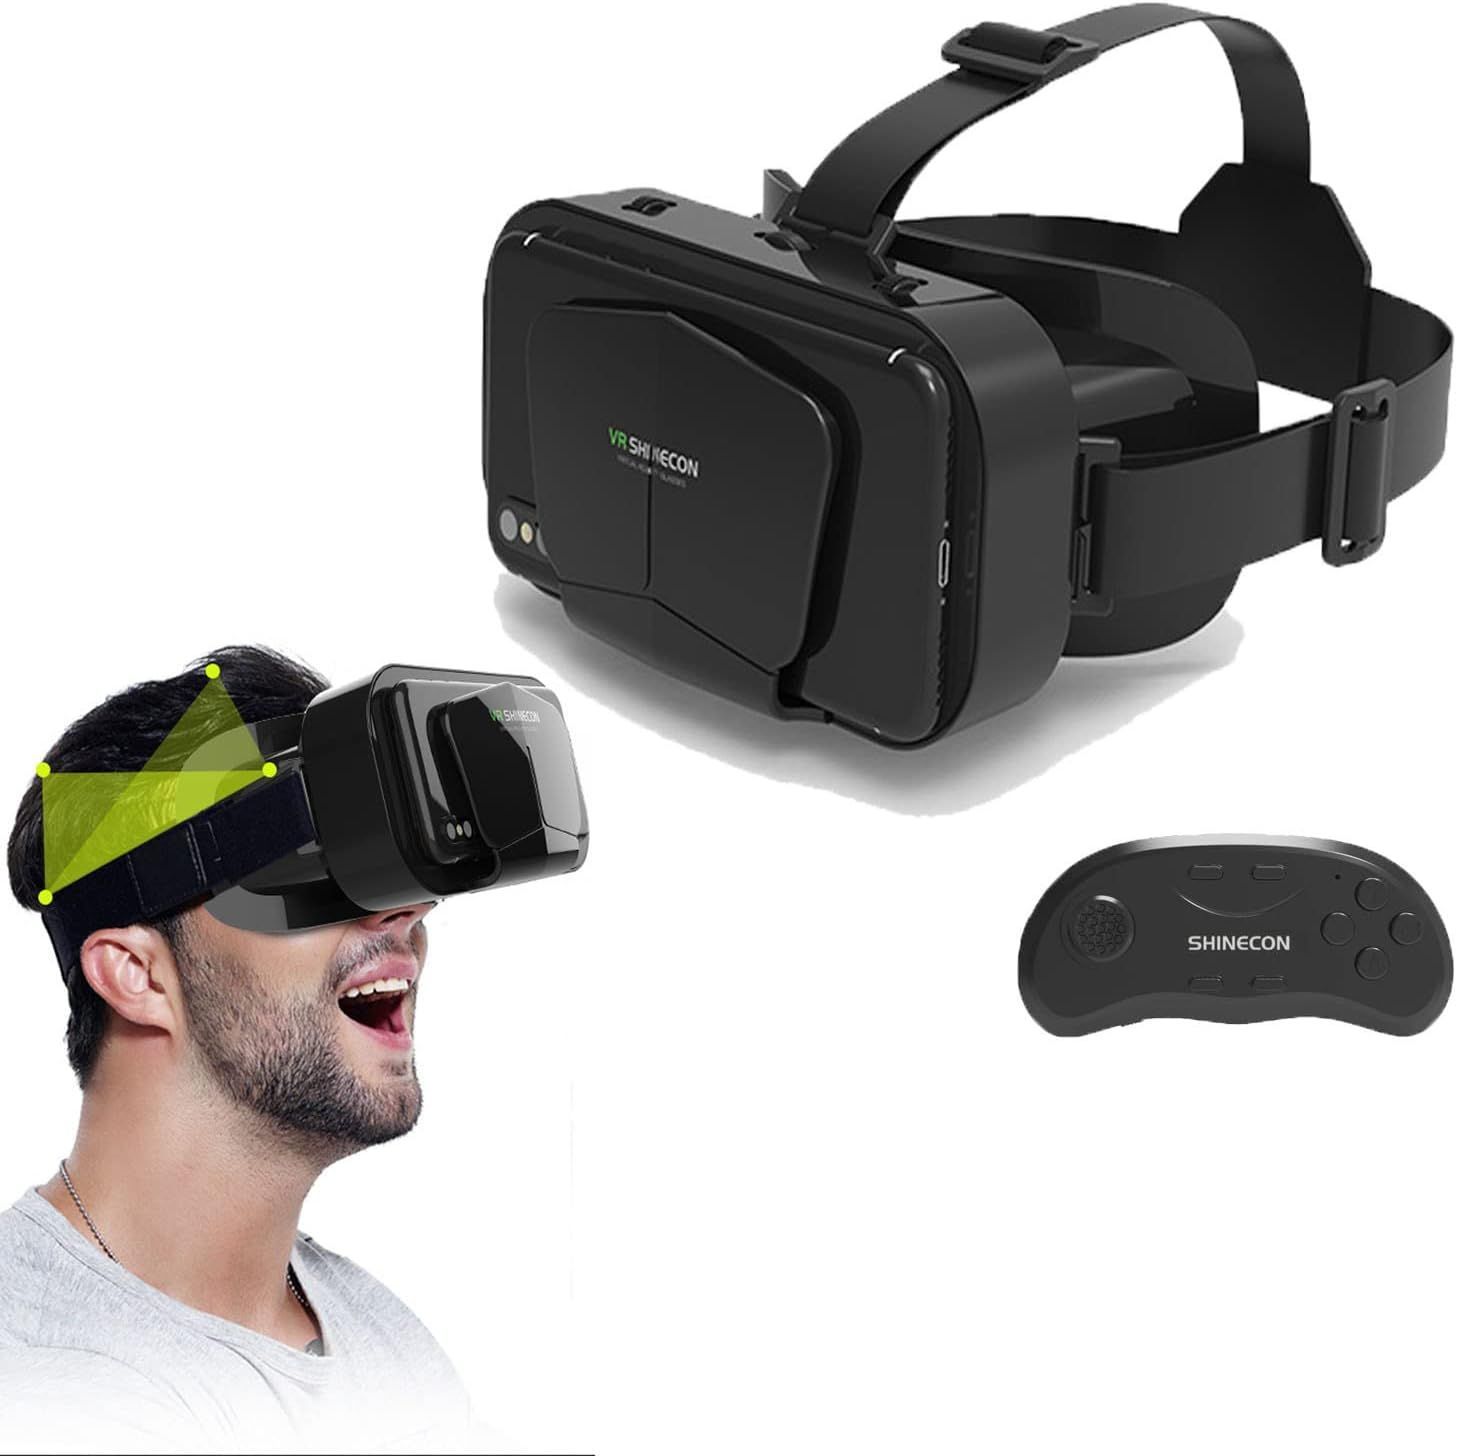 Vr примеры. Очки виртуальной реальности v10. Очки виртуальной реальности код. Покупки в виртуальной реальности. Очки виртуальной реальности Кио код.